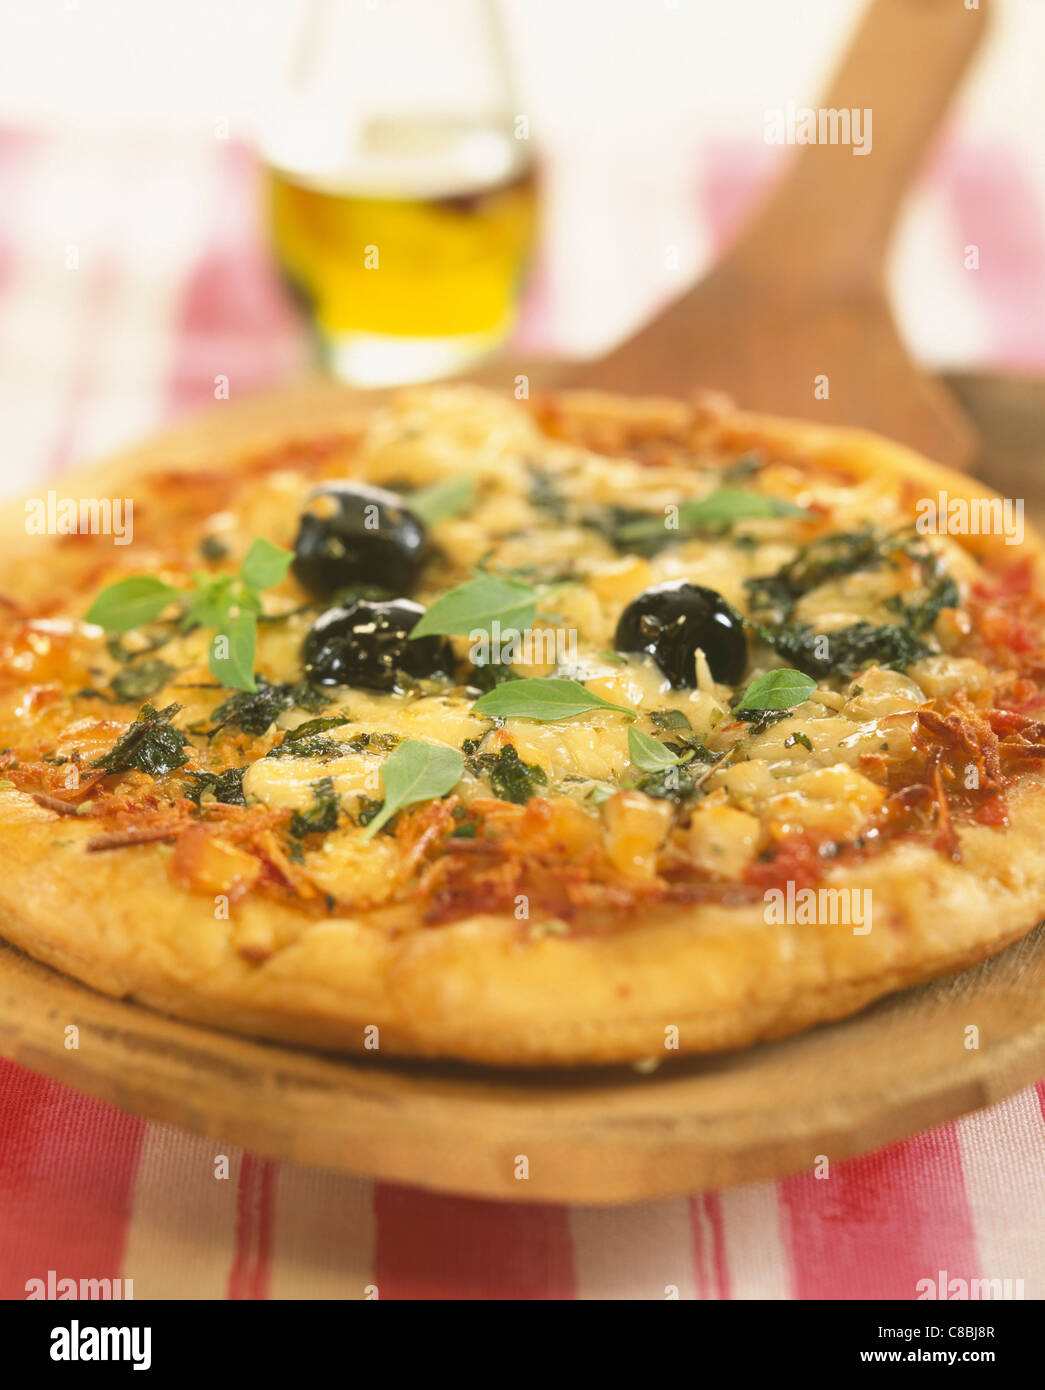 neapolitan pizza Stock Photo